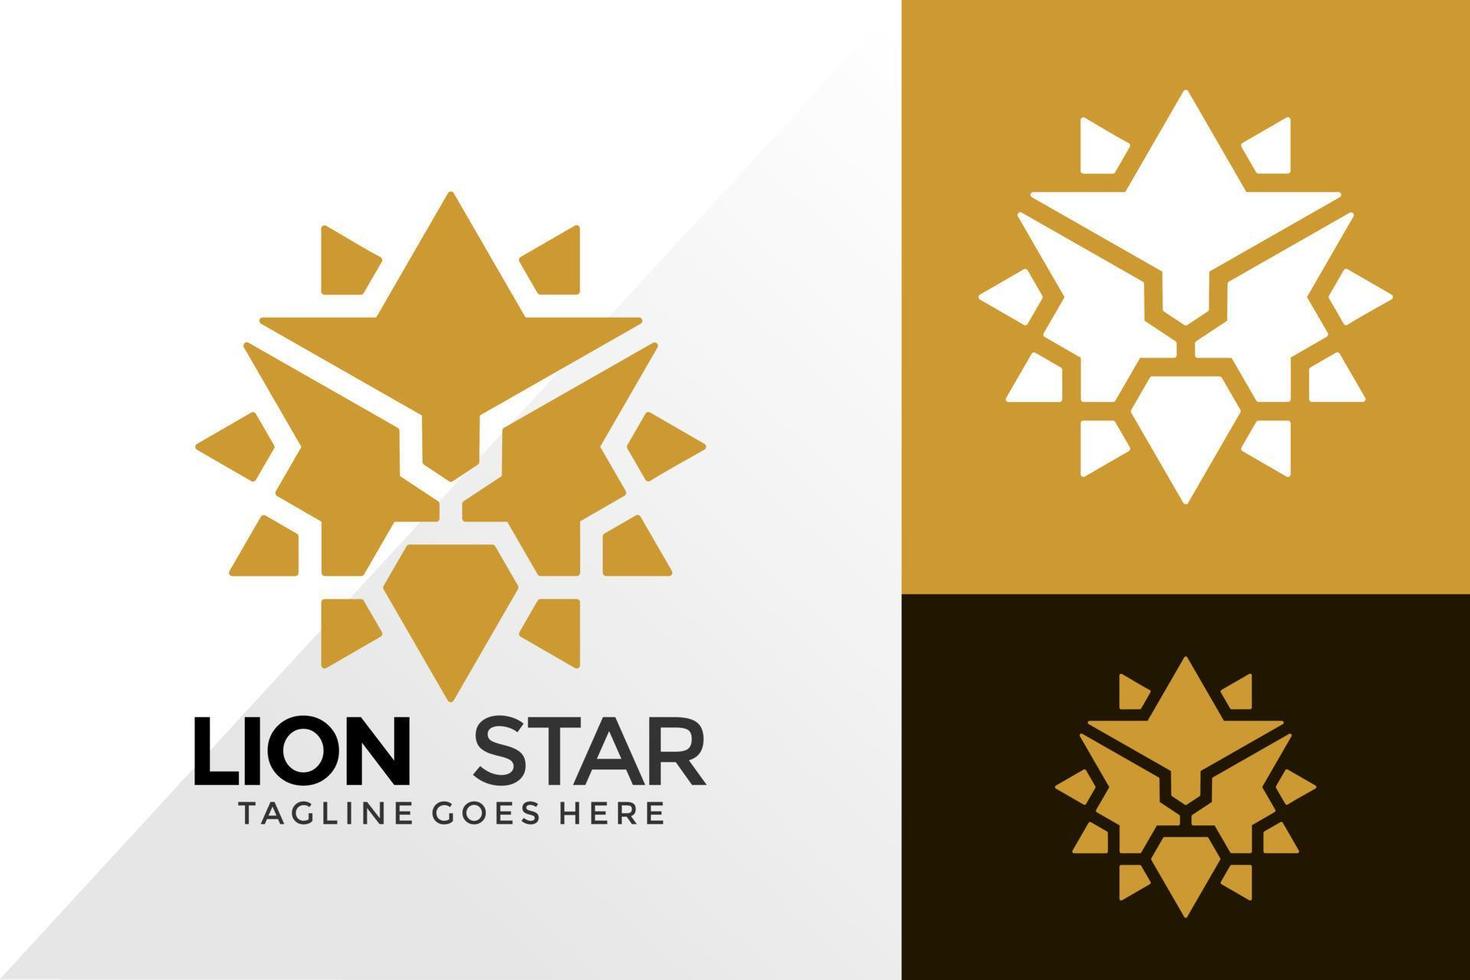 disegno del logo della stella del leone d'oro, loghi dell'identità del marchio progetta il modello di illustrazione vettoriale